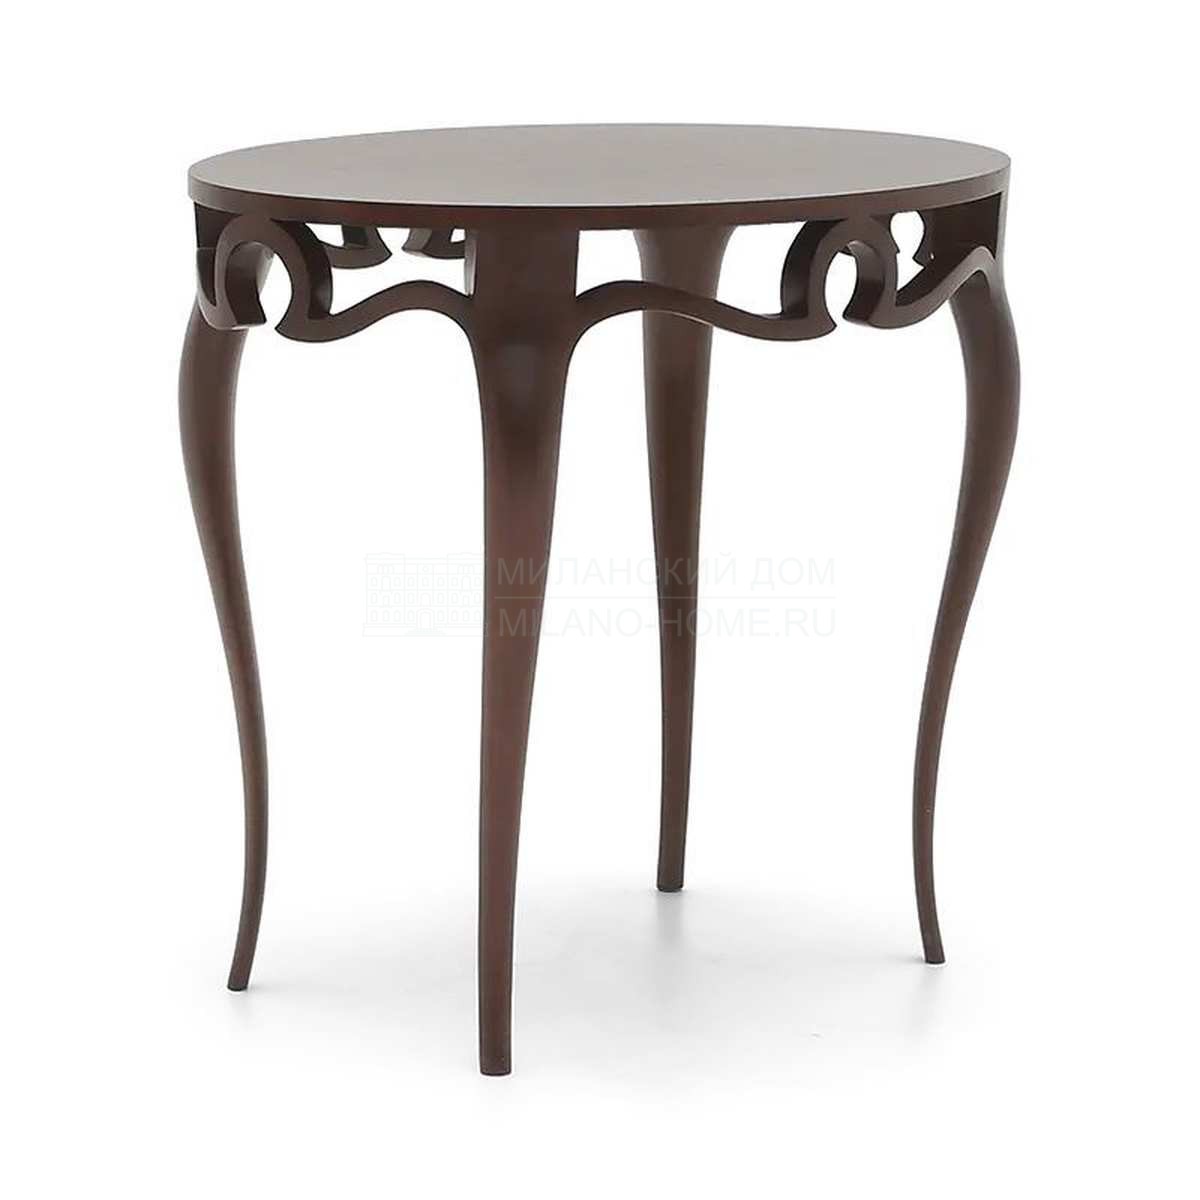 Кофейный столик Piaget side table  из США фабрики CHRISTOPHER GUY